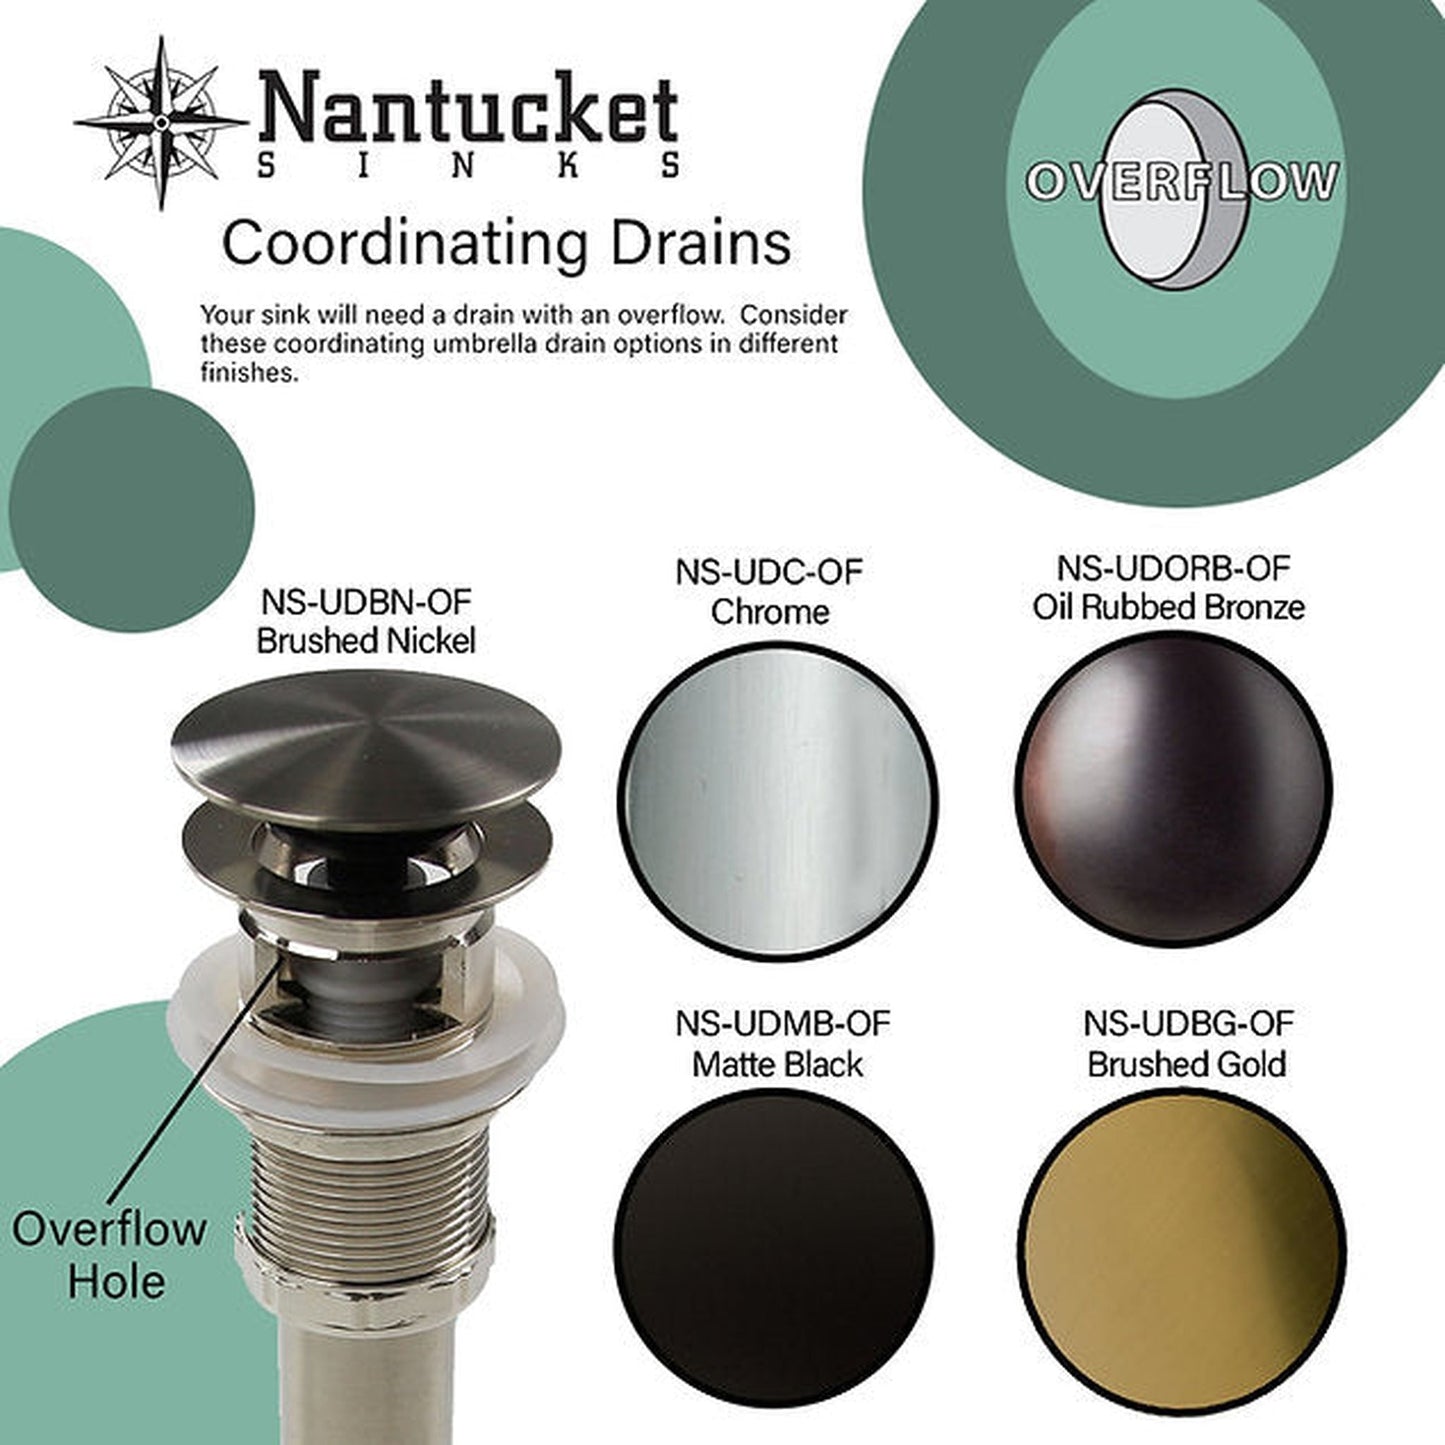 Nantucket Sinks Regatta 20" W x 16 D" St. Louis Italian Fireclay Oval Glazed Brown Drop-In Vanity Sink With Overflow